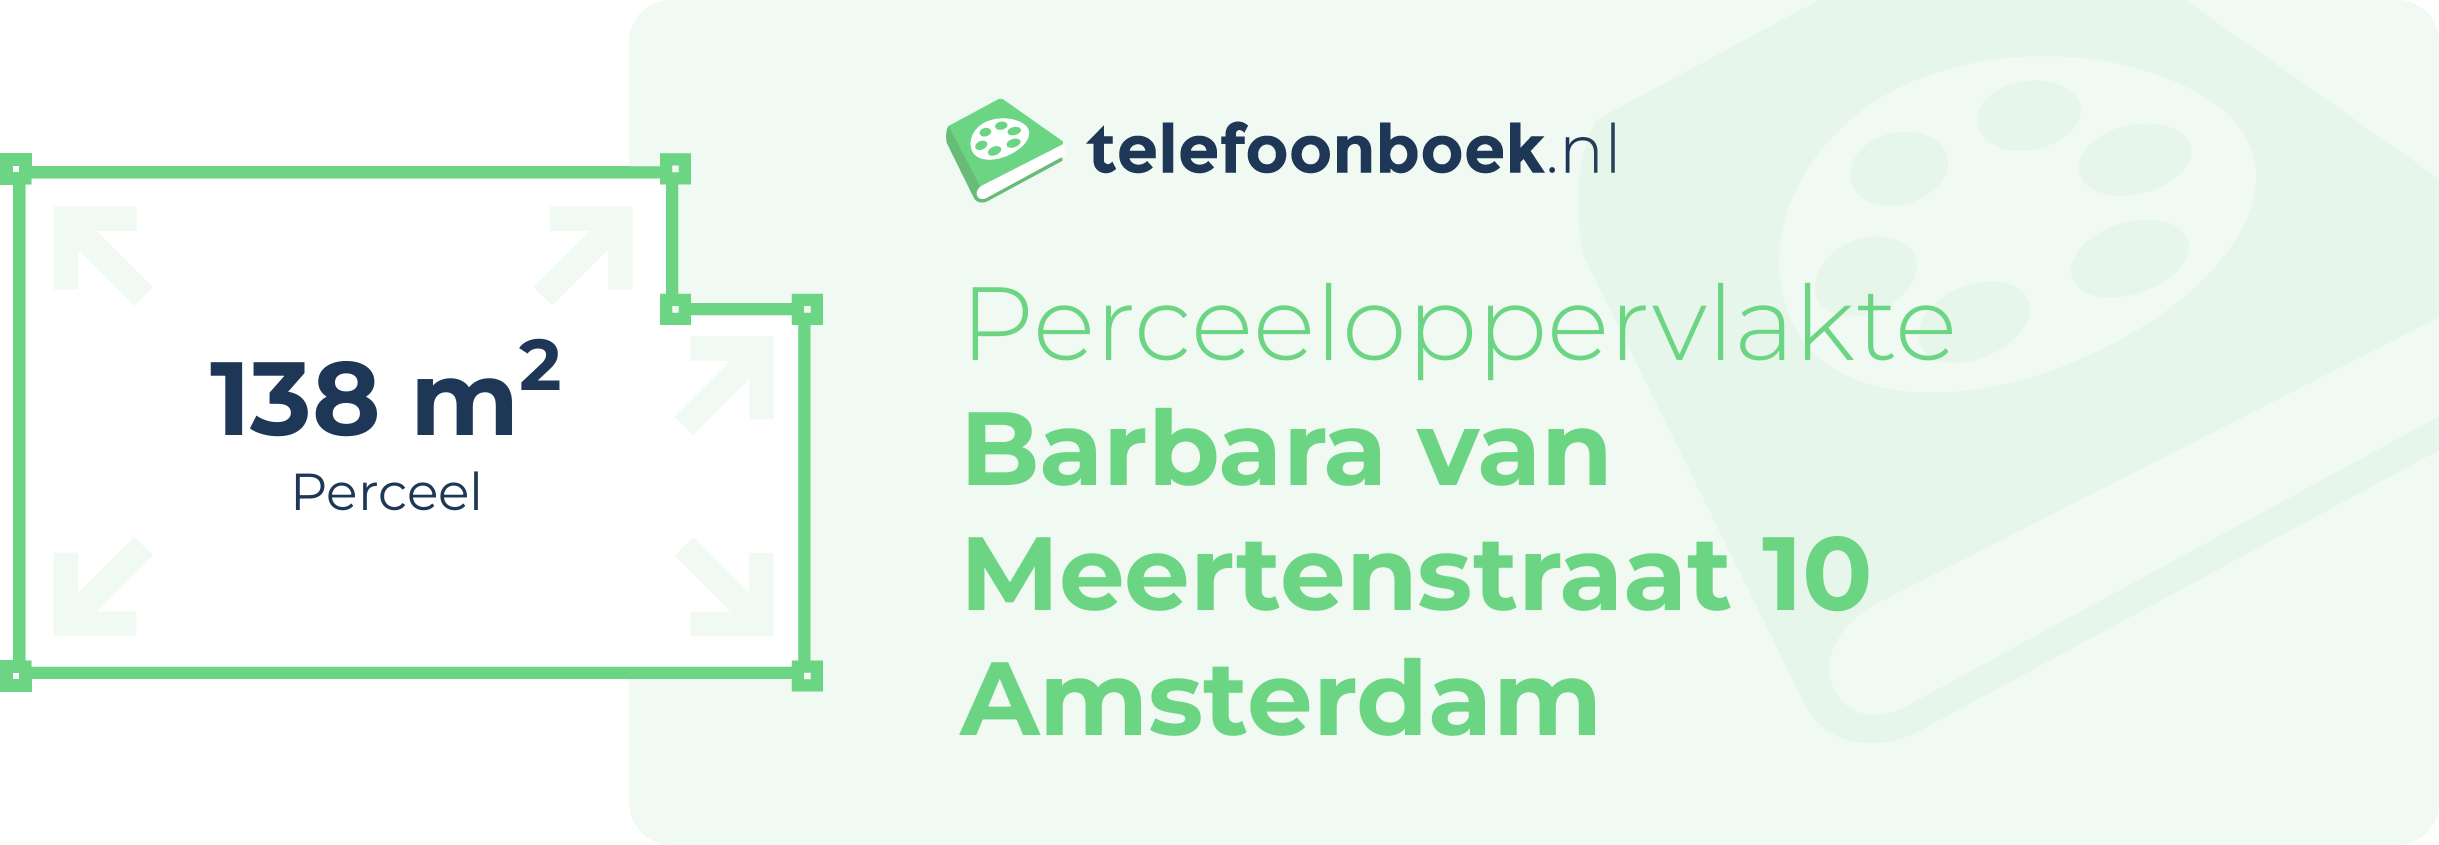 Perceeloppervlakte Barbara Van Meertenstraat 10 Amsterdam